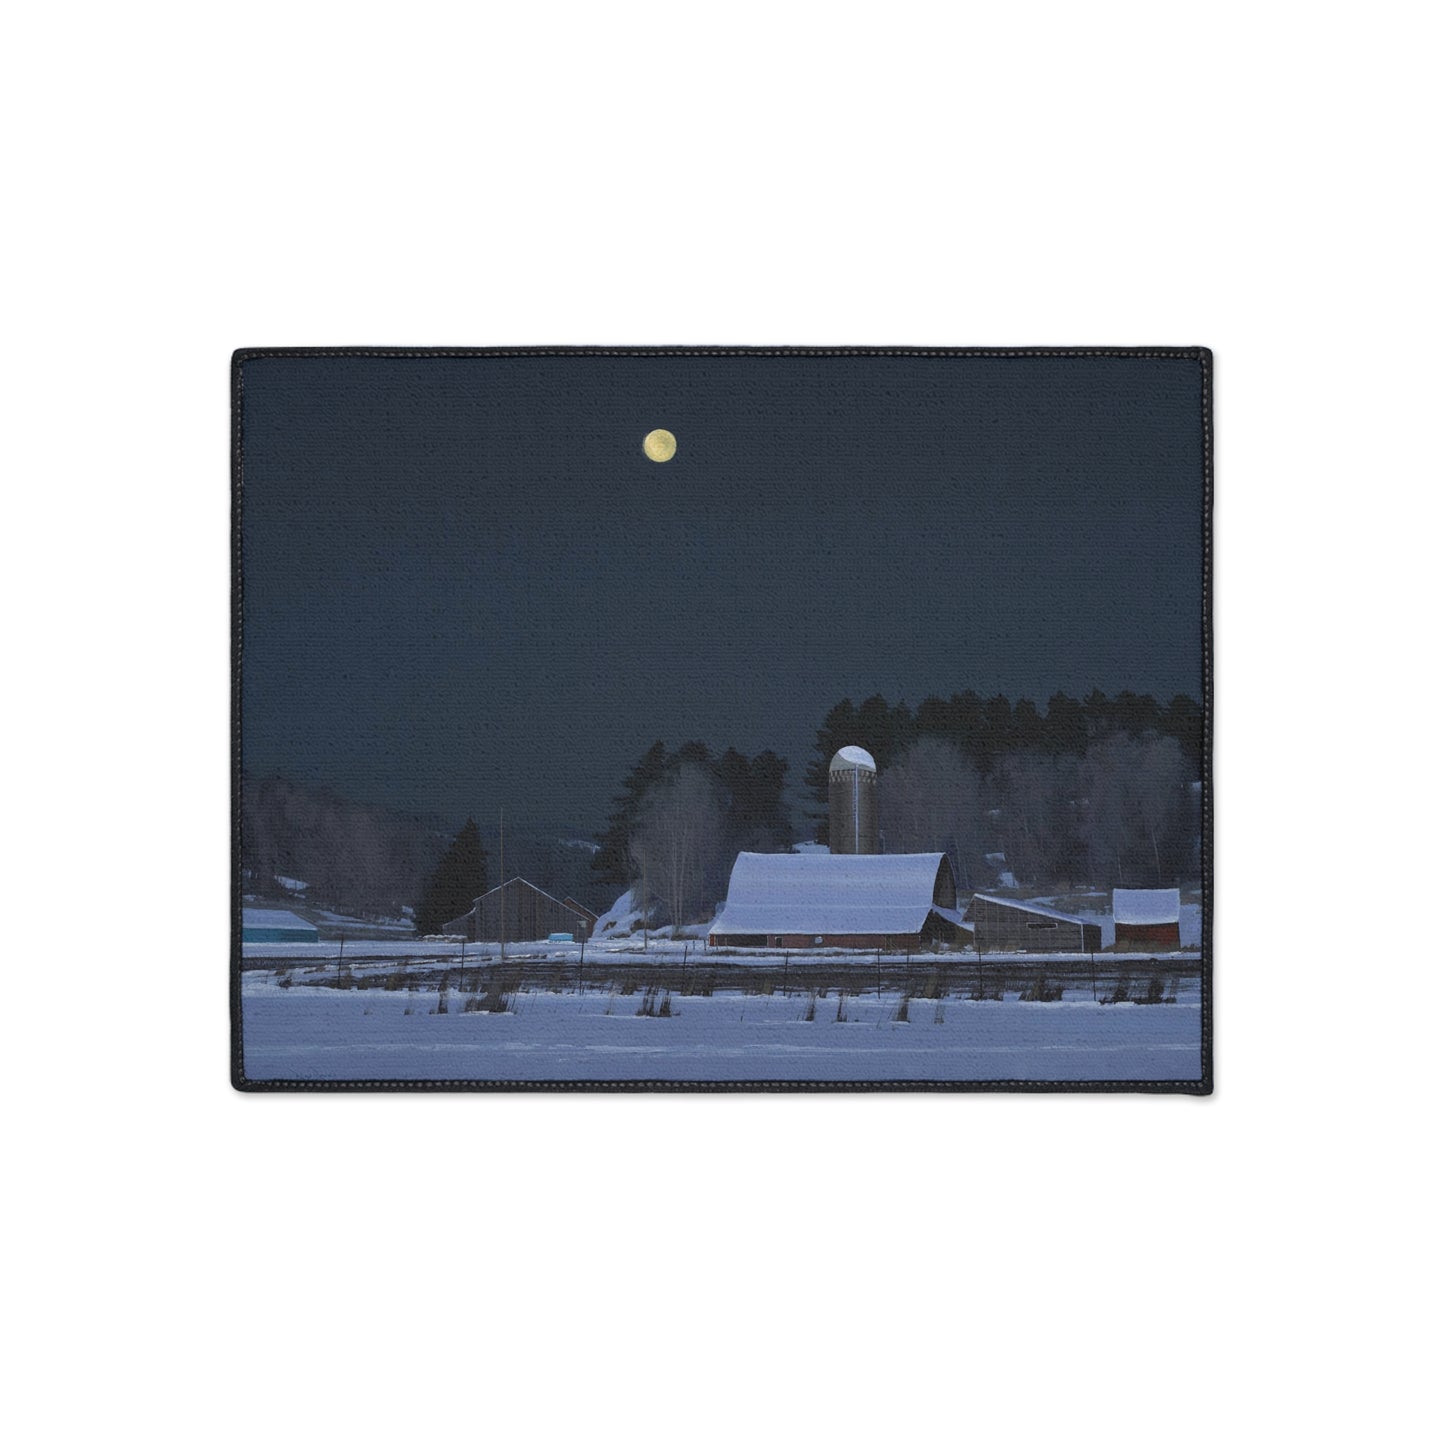 Ben Bauer: "Moonset, 7 Minutes to Sun Up" - Heavy Duty Floor Mat